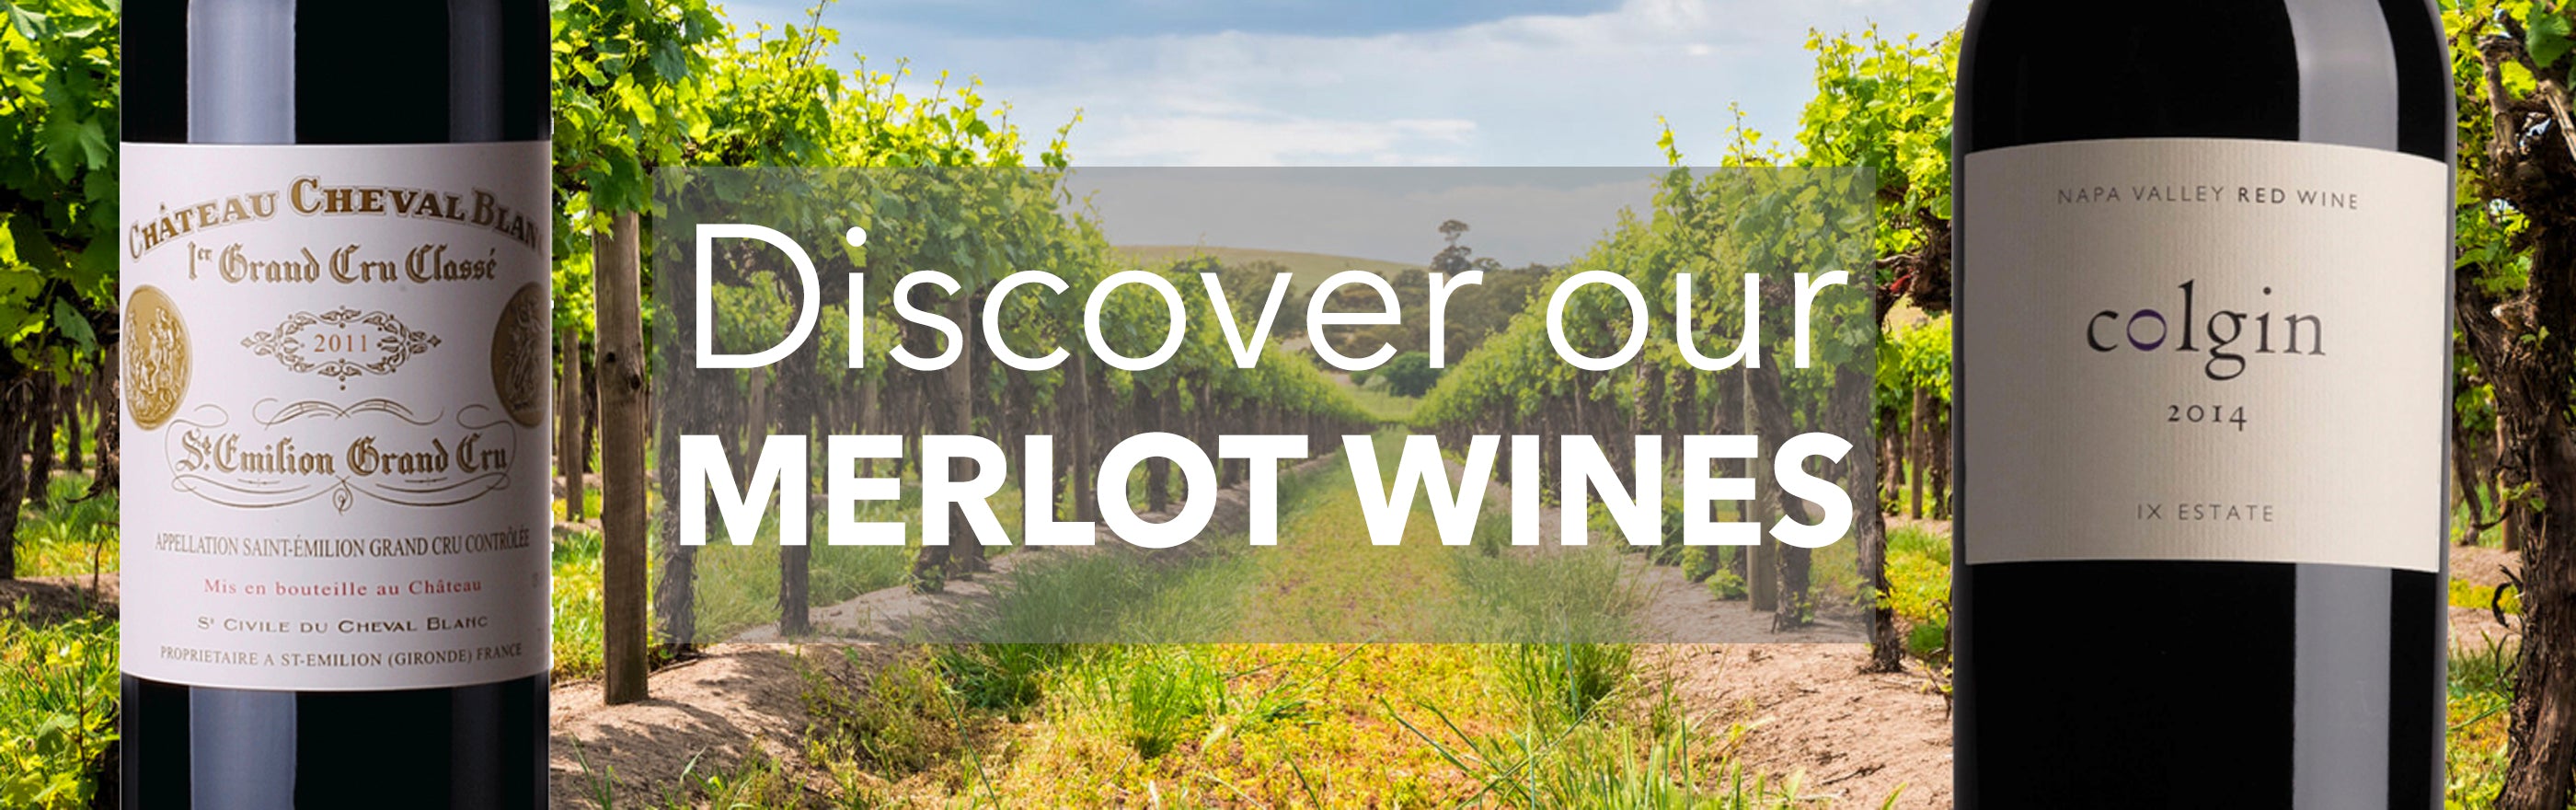 Buy merlot wines online store